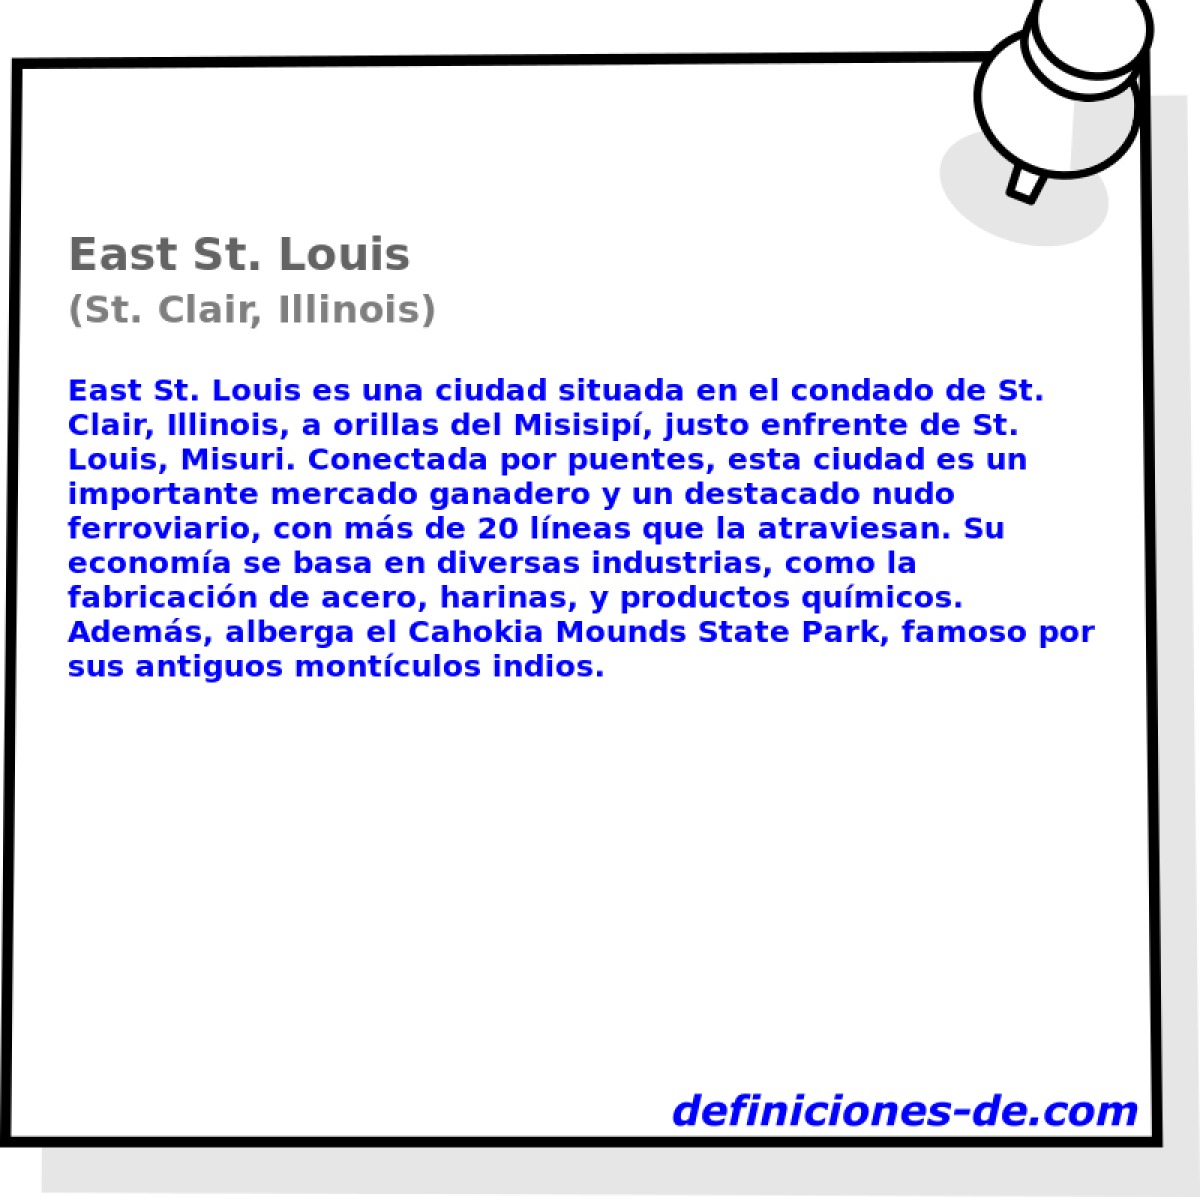 East St. Louis (St. Clair, Illinois)